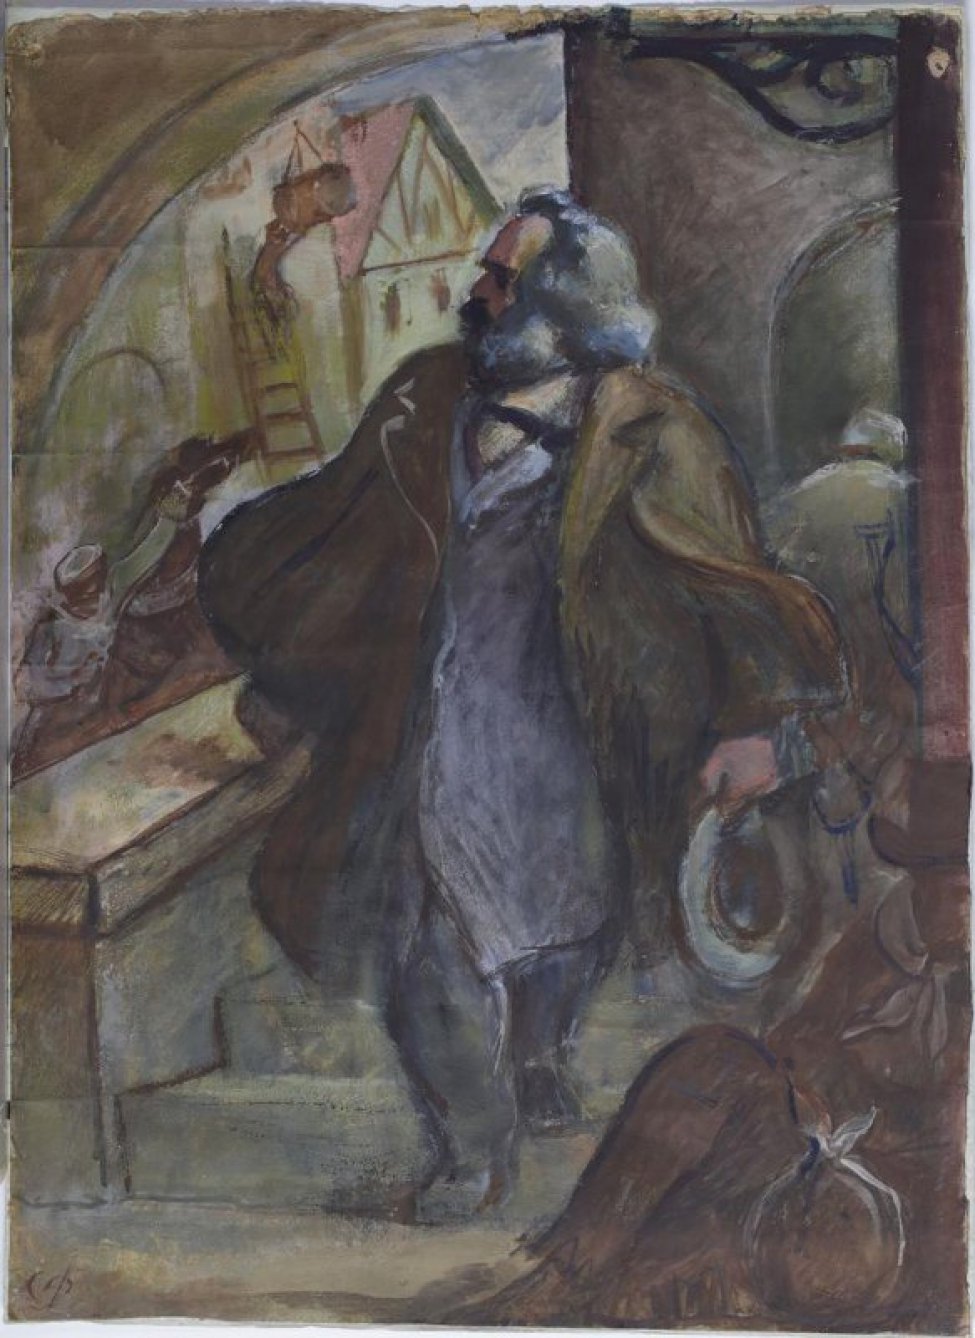 В центре композиции изображен К. Маркс, спускающийся по лестнице со шляпой в левой руке. В правом нижнем углу изображен  сидящий мужчина с узлом в руках. На втором плане виден дом и солдат, усмиряющий коня.